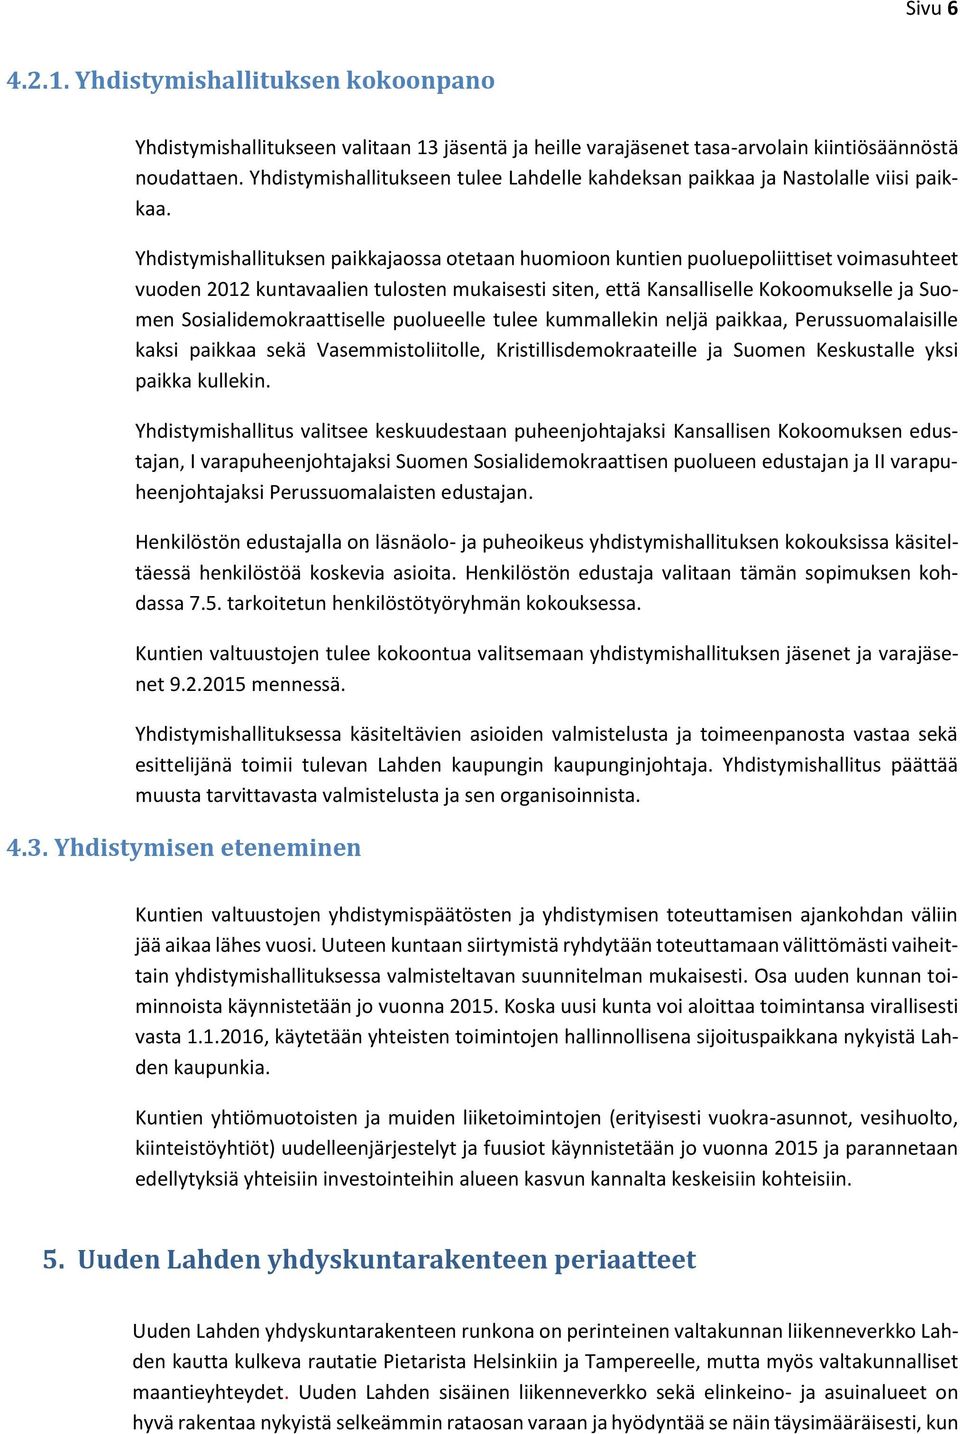 Yhdistymishallituksen paikkajaossa otetaan huomioon kuntien puoluepoliittiset voimasuhteet vuoden 2012 kuntavaalien tulosten mukaisesti siten, että Kansalliselle Kokoomukselle ja Suomen